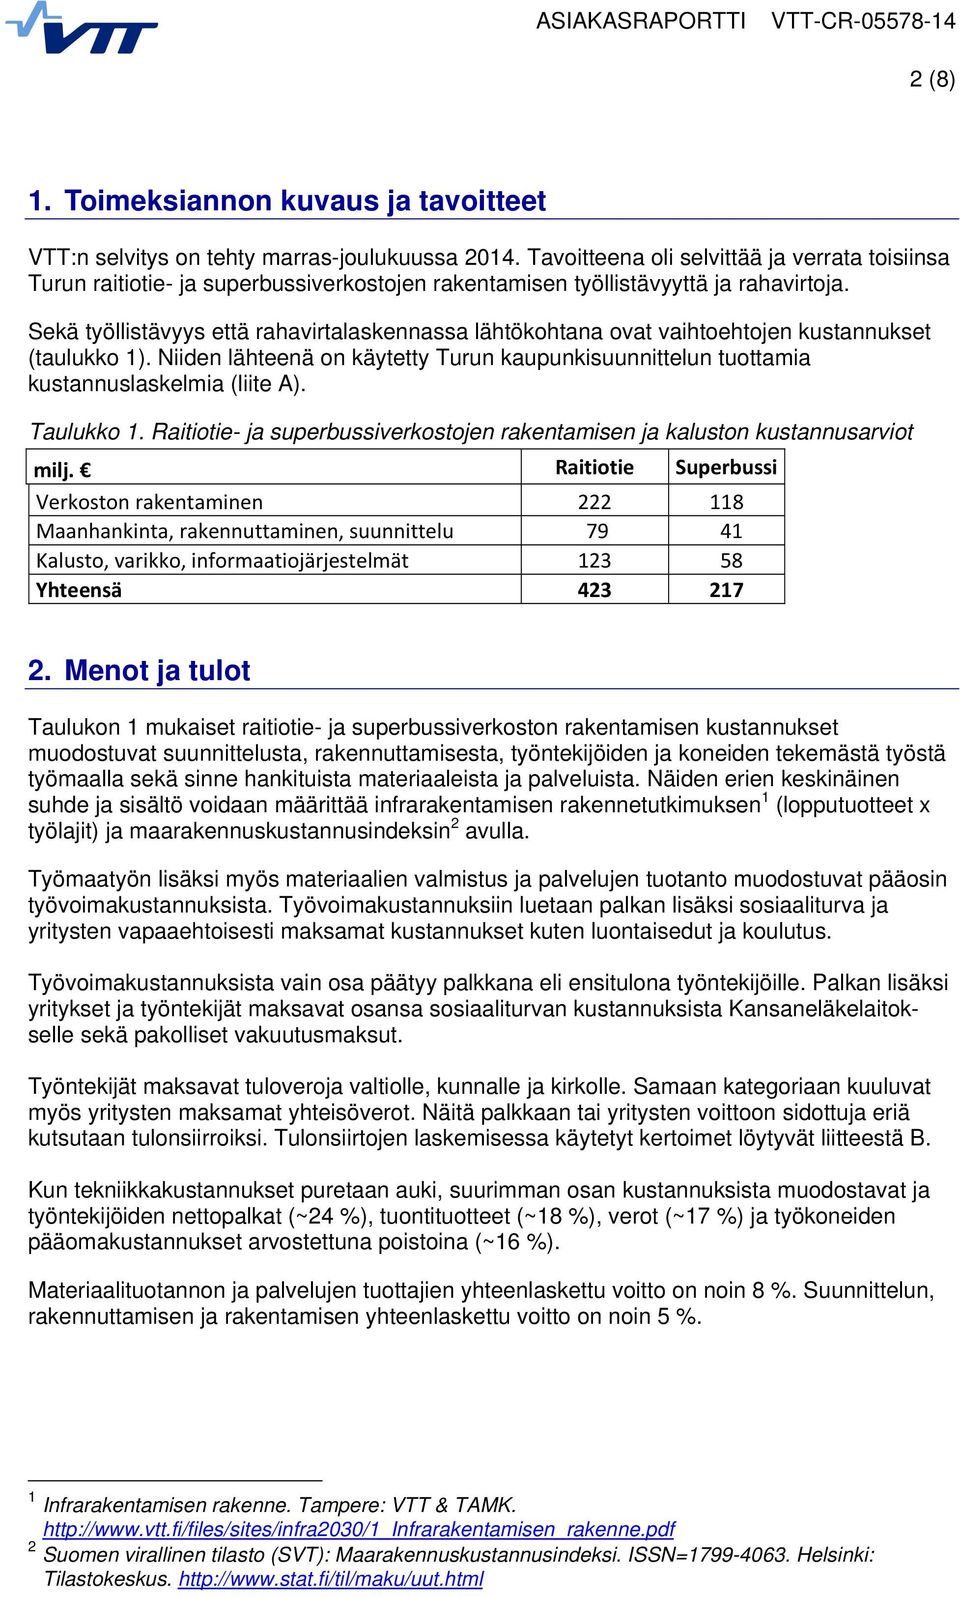 Sekä työllistävyys että rahavirtalaskennassa lähtökohtana ovat vaihtoehtojen kustannukset (taulukko 1). Niiden lähteenä on käytetty Turun kaupunkisuunnittelun tuottamia kustannuslaskelmia (liite A).